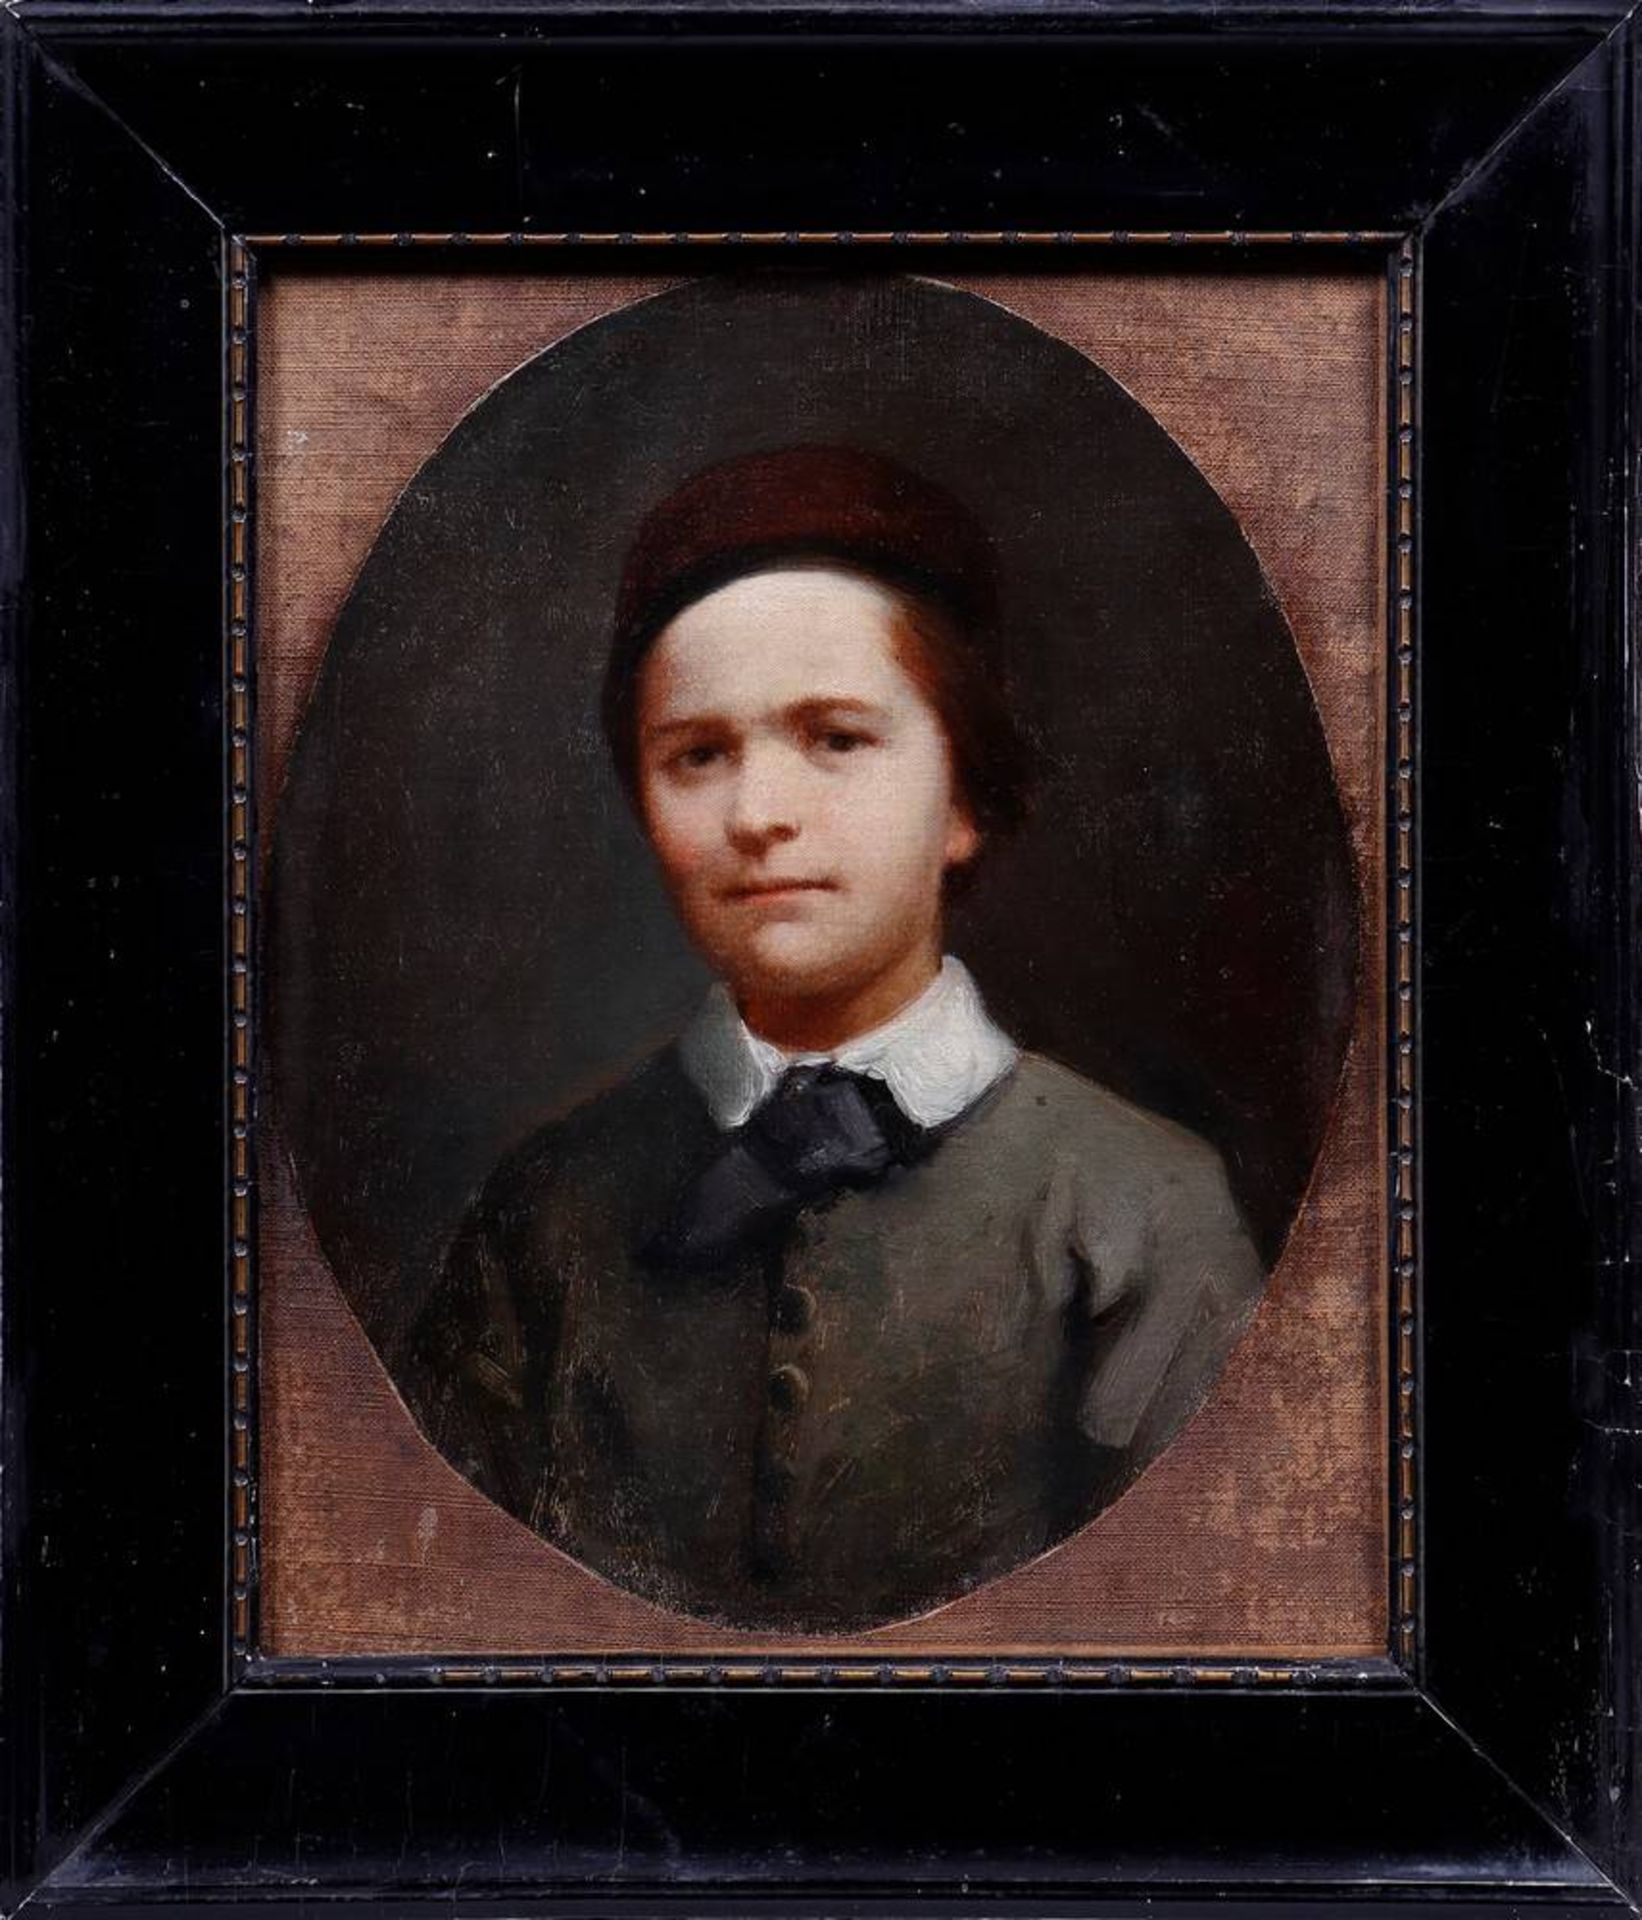 Porträt eines Jungen mit KappeAnonym, 19. Jhdt., Öl auf Leinwand/doppelt doubliert, unsign., ca.